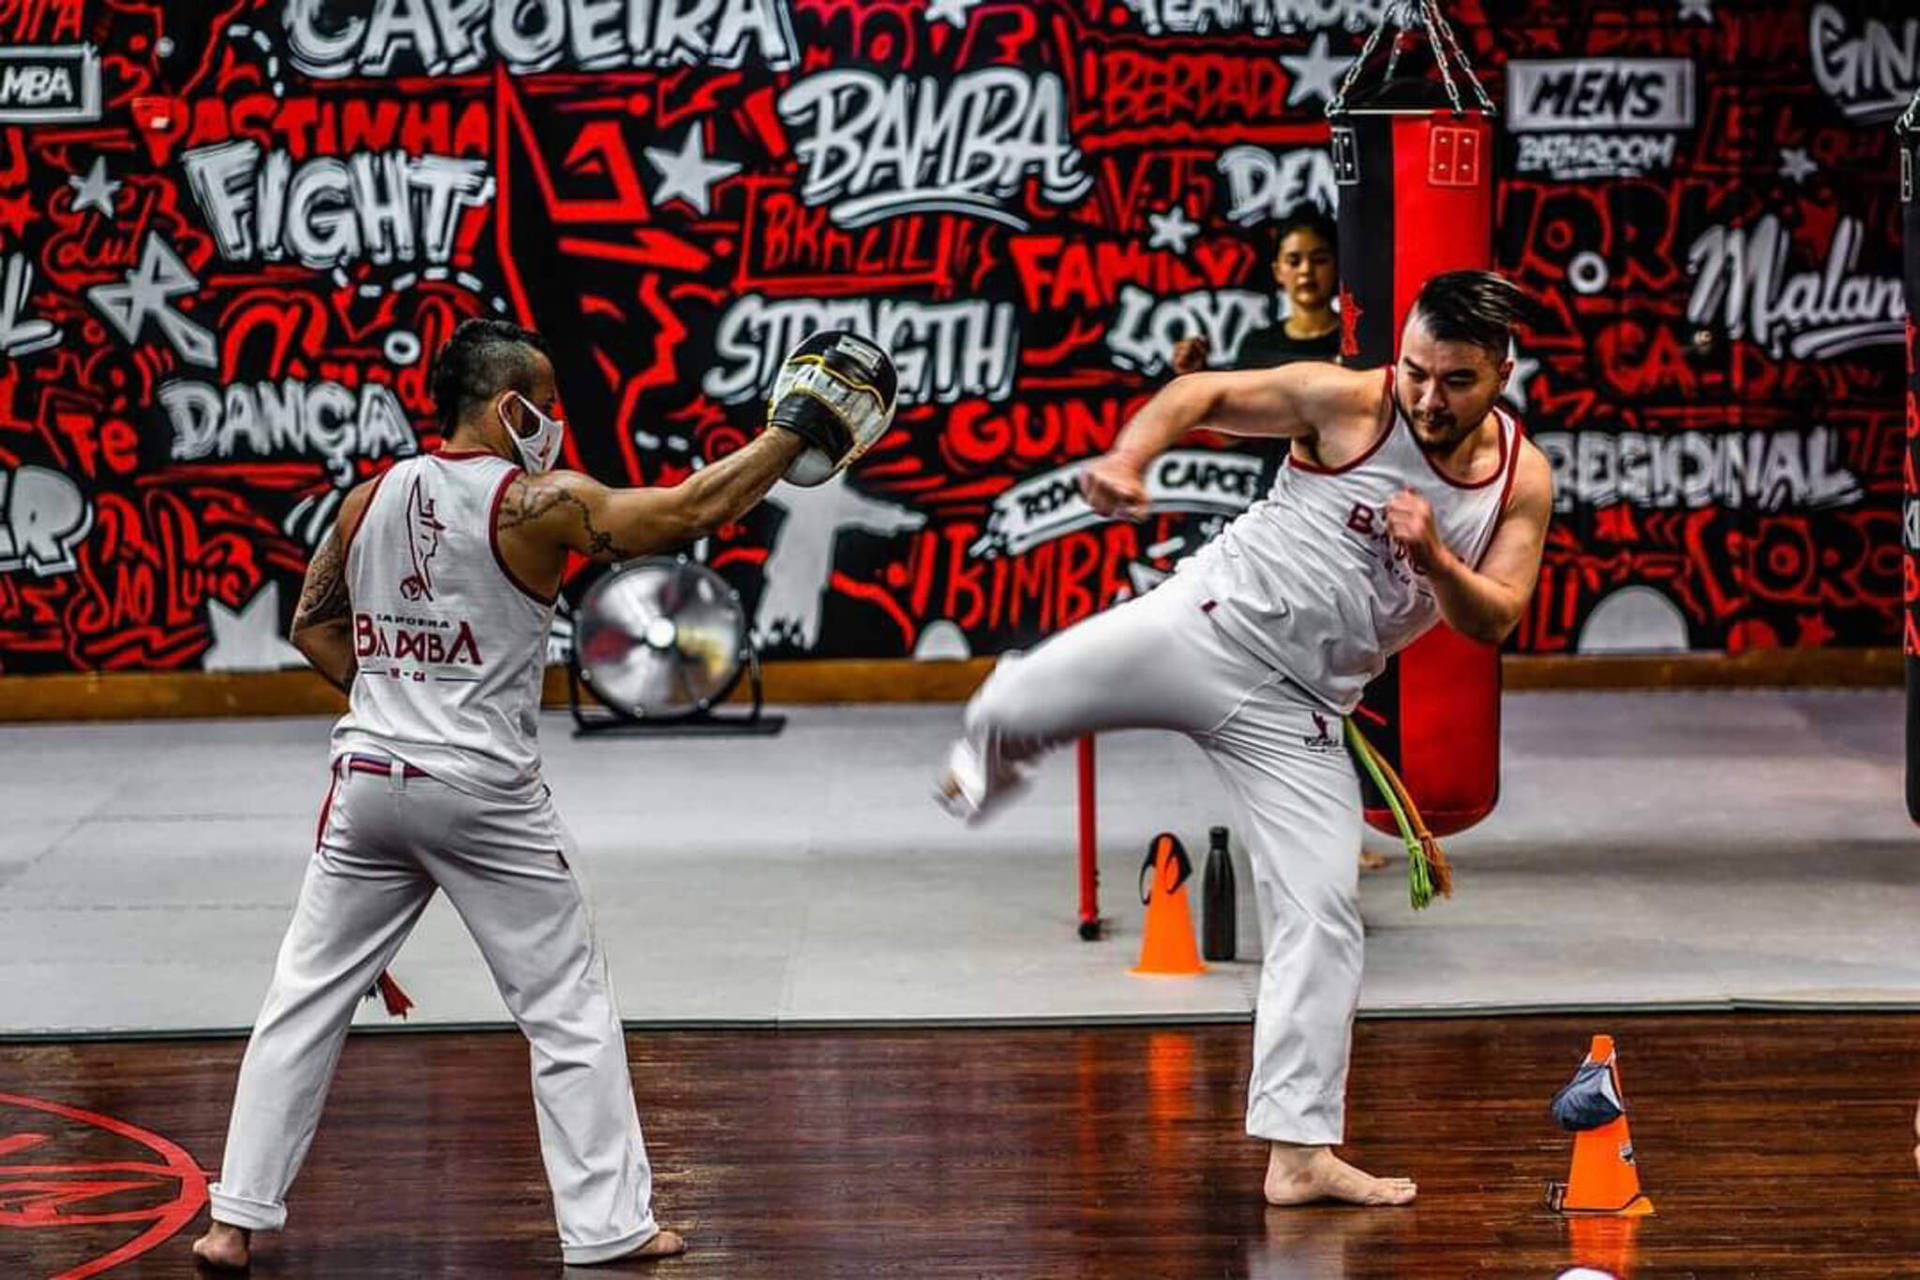 Capoeira 2048 X 1365 Wallpaper